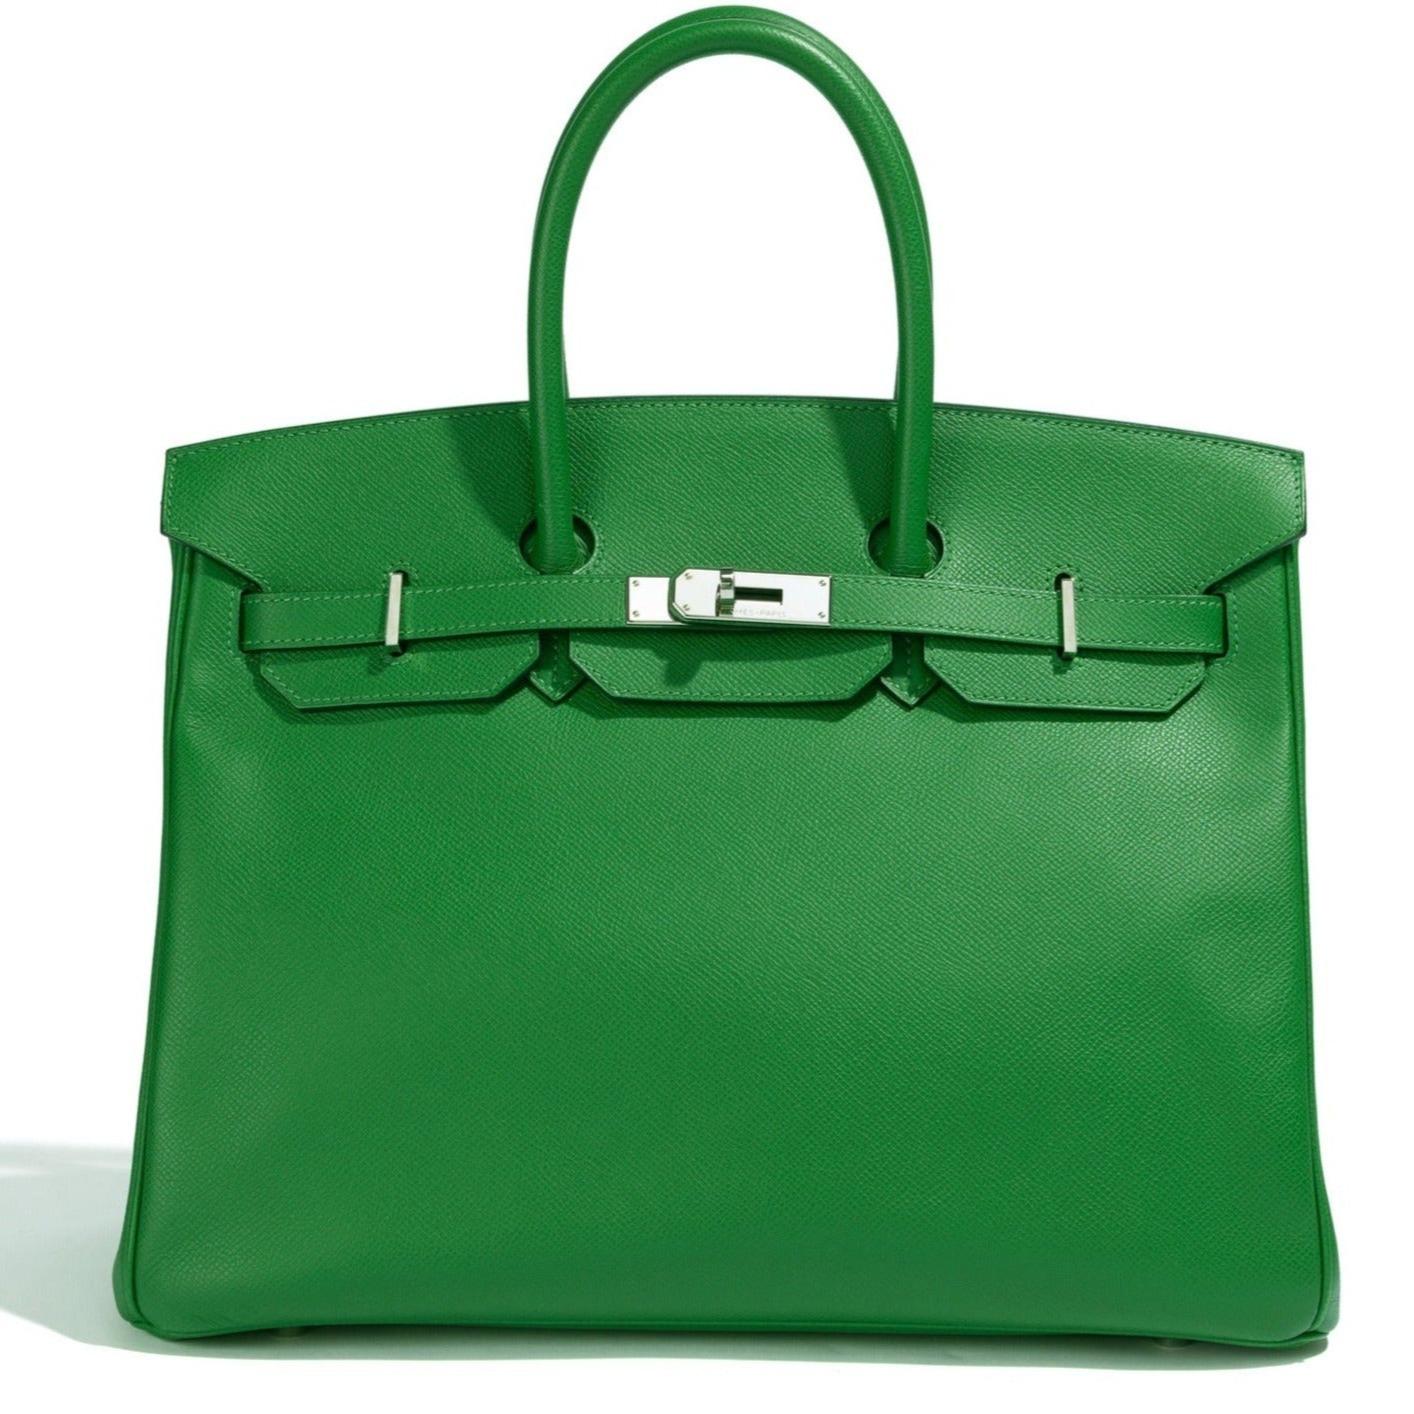 Hermès Birkin 35 Green Bengal For Sale